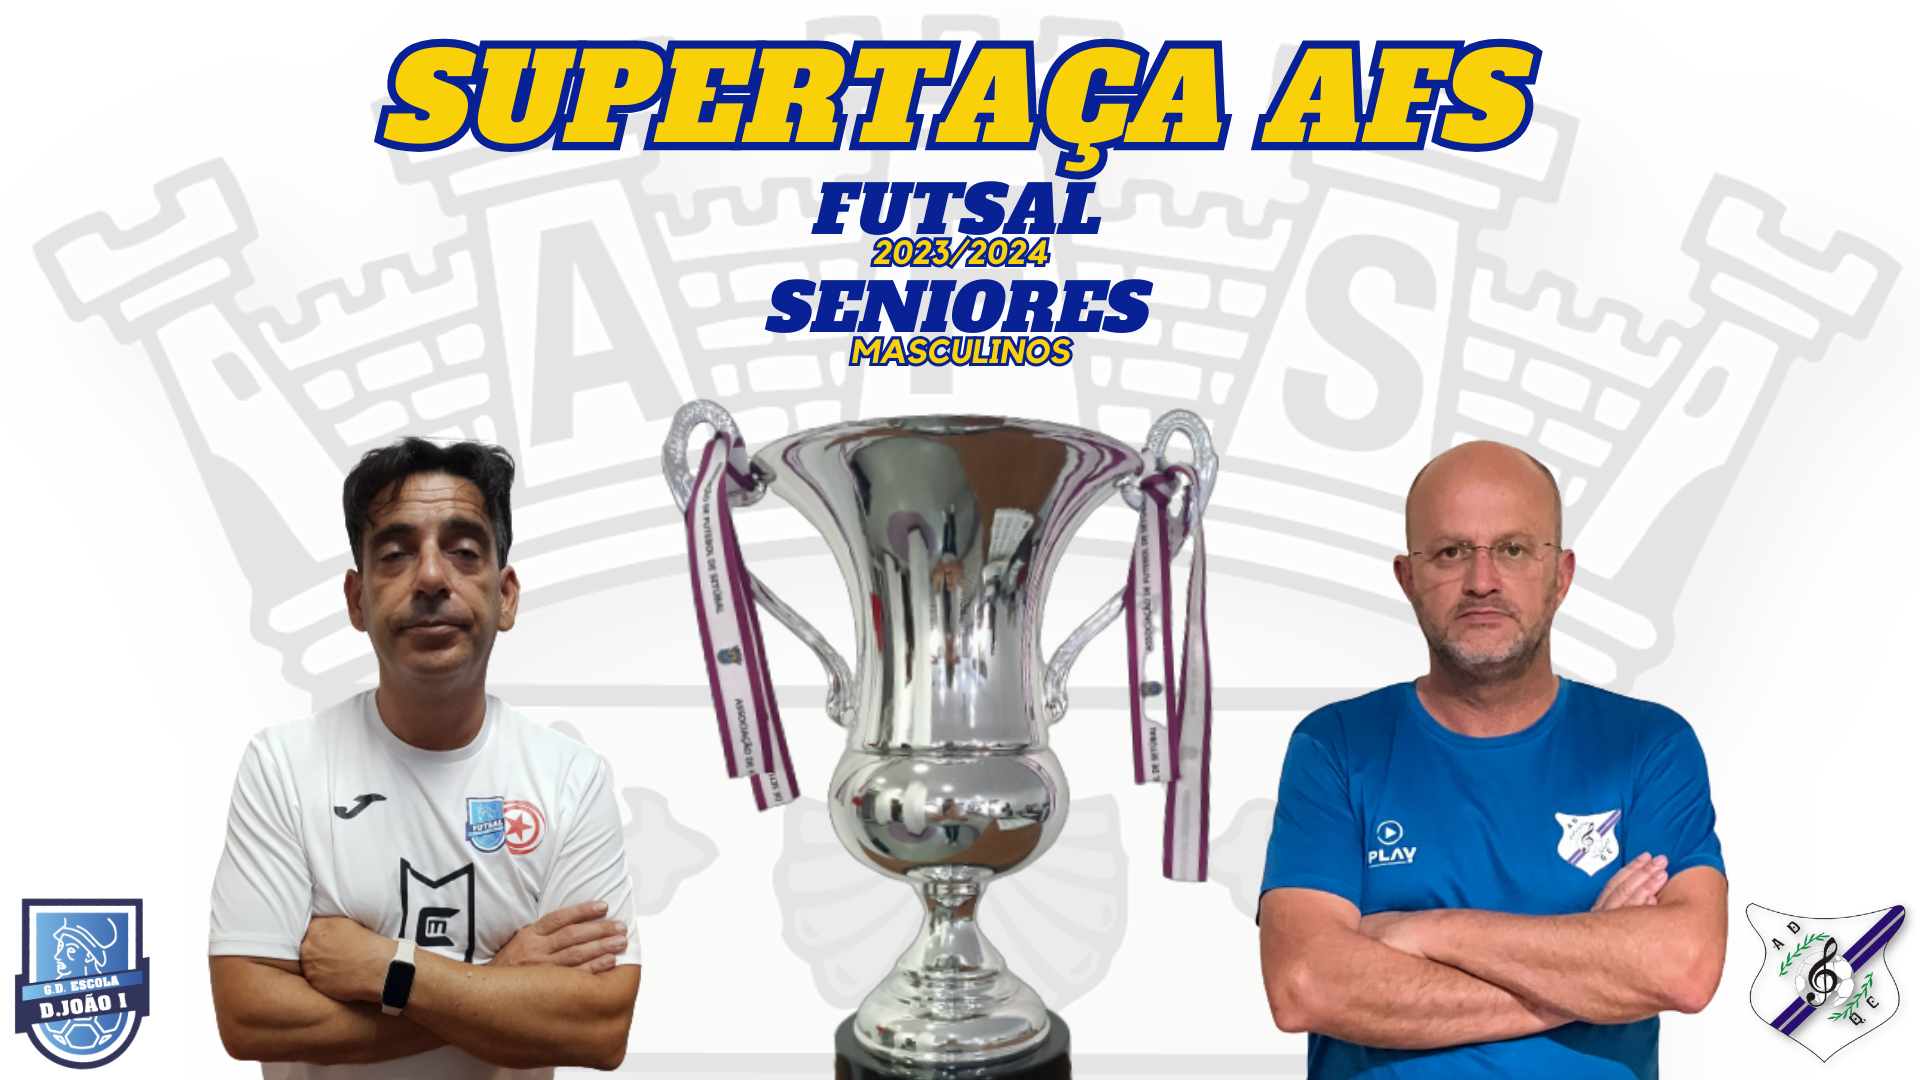 Expetativas dos treinadores para a decisão da Supertaça AFS masculina de futsal 